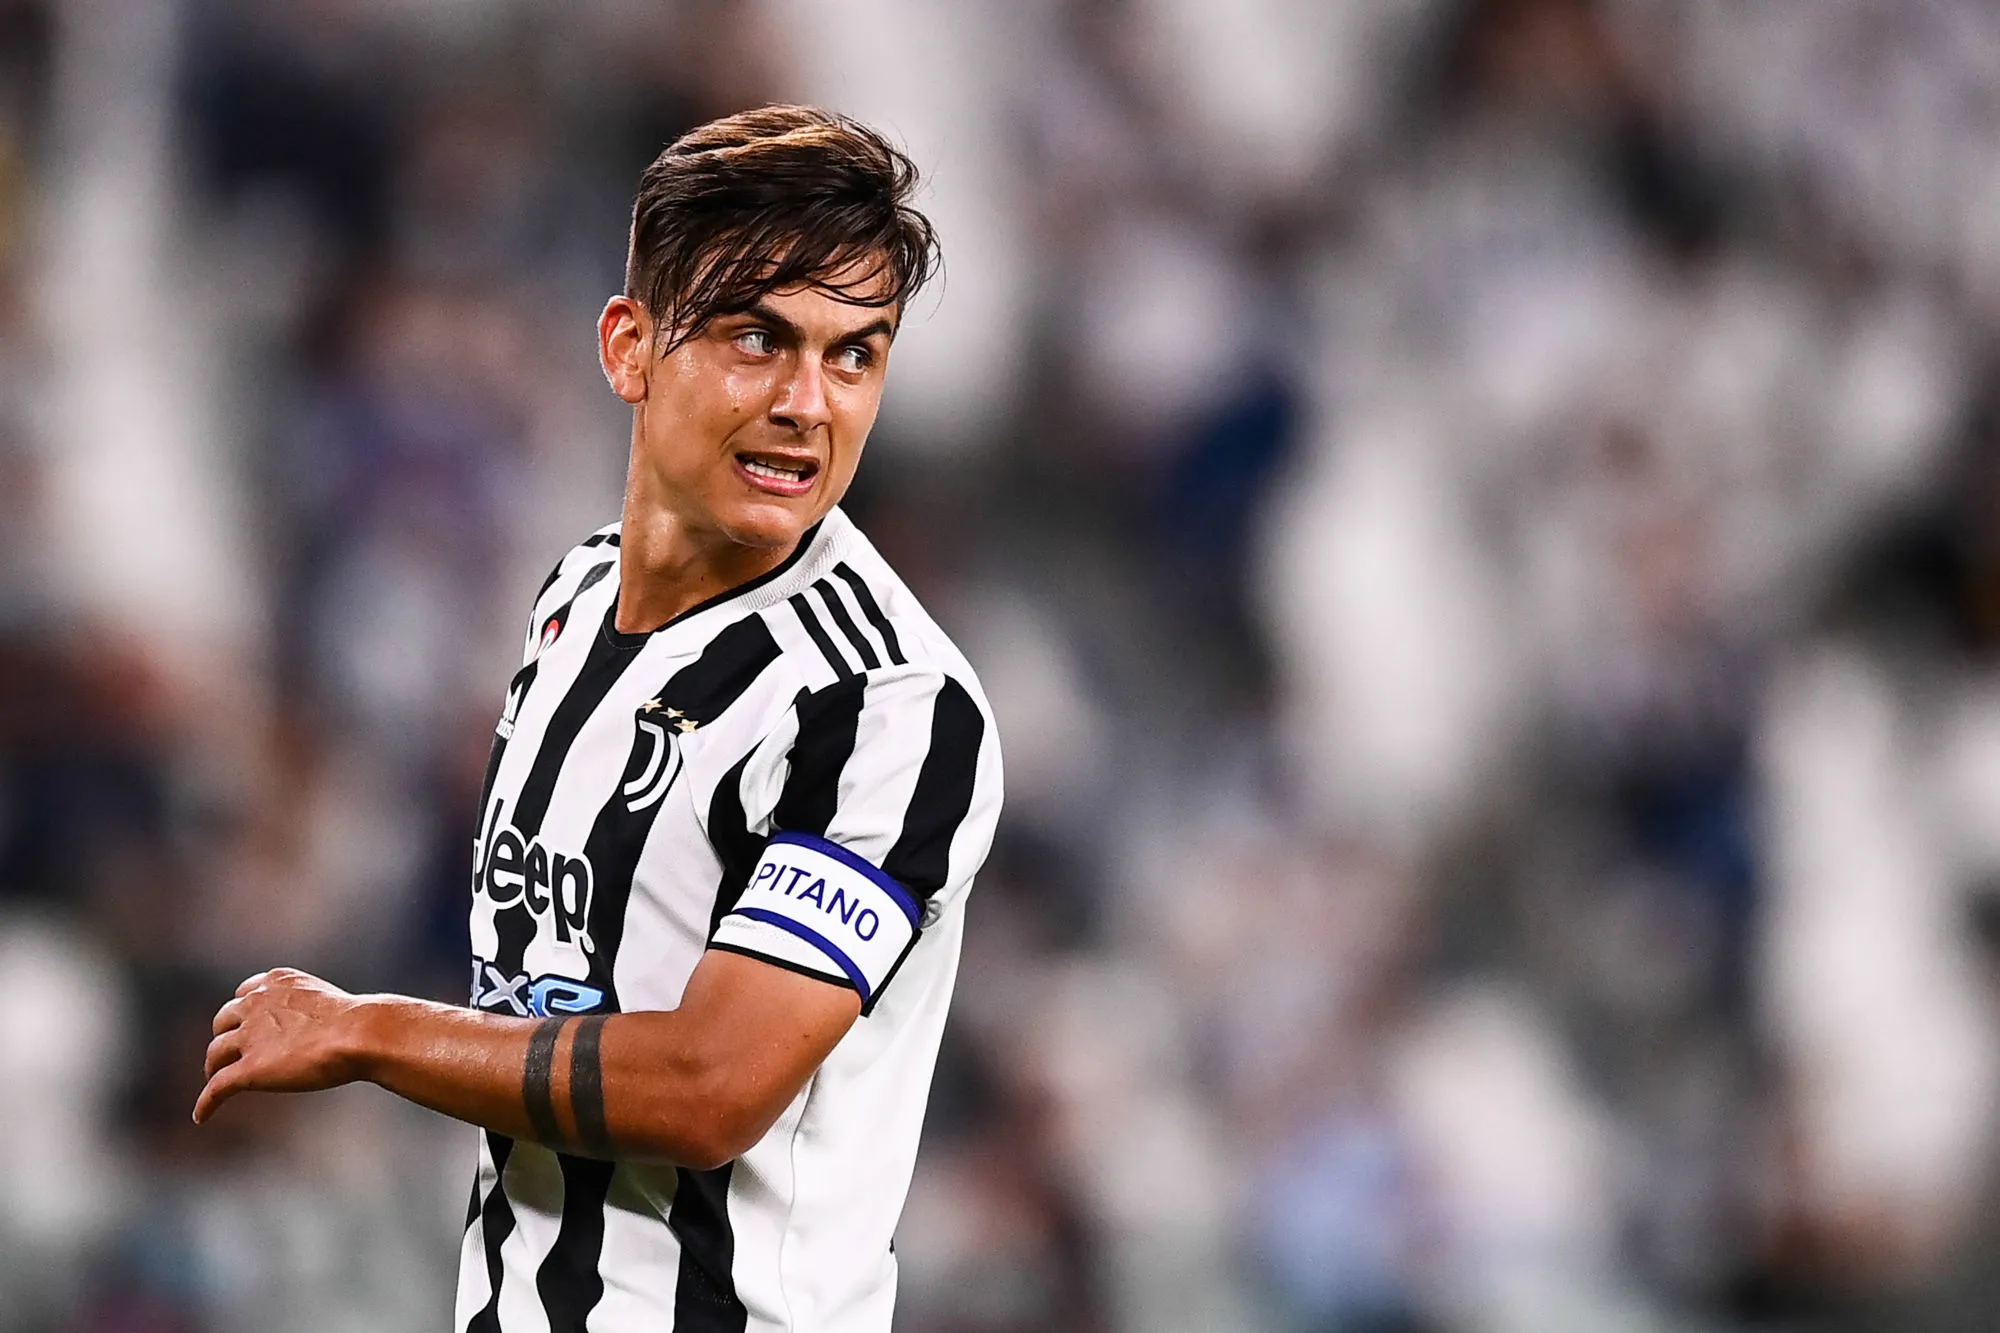 Pronostic Juventus Milan AC : Analyse, cotes et prono du match de Serie A